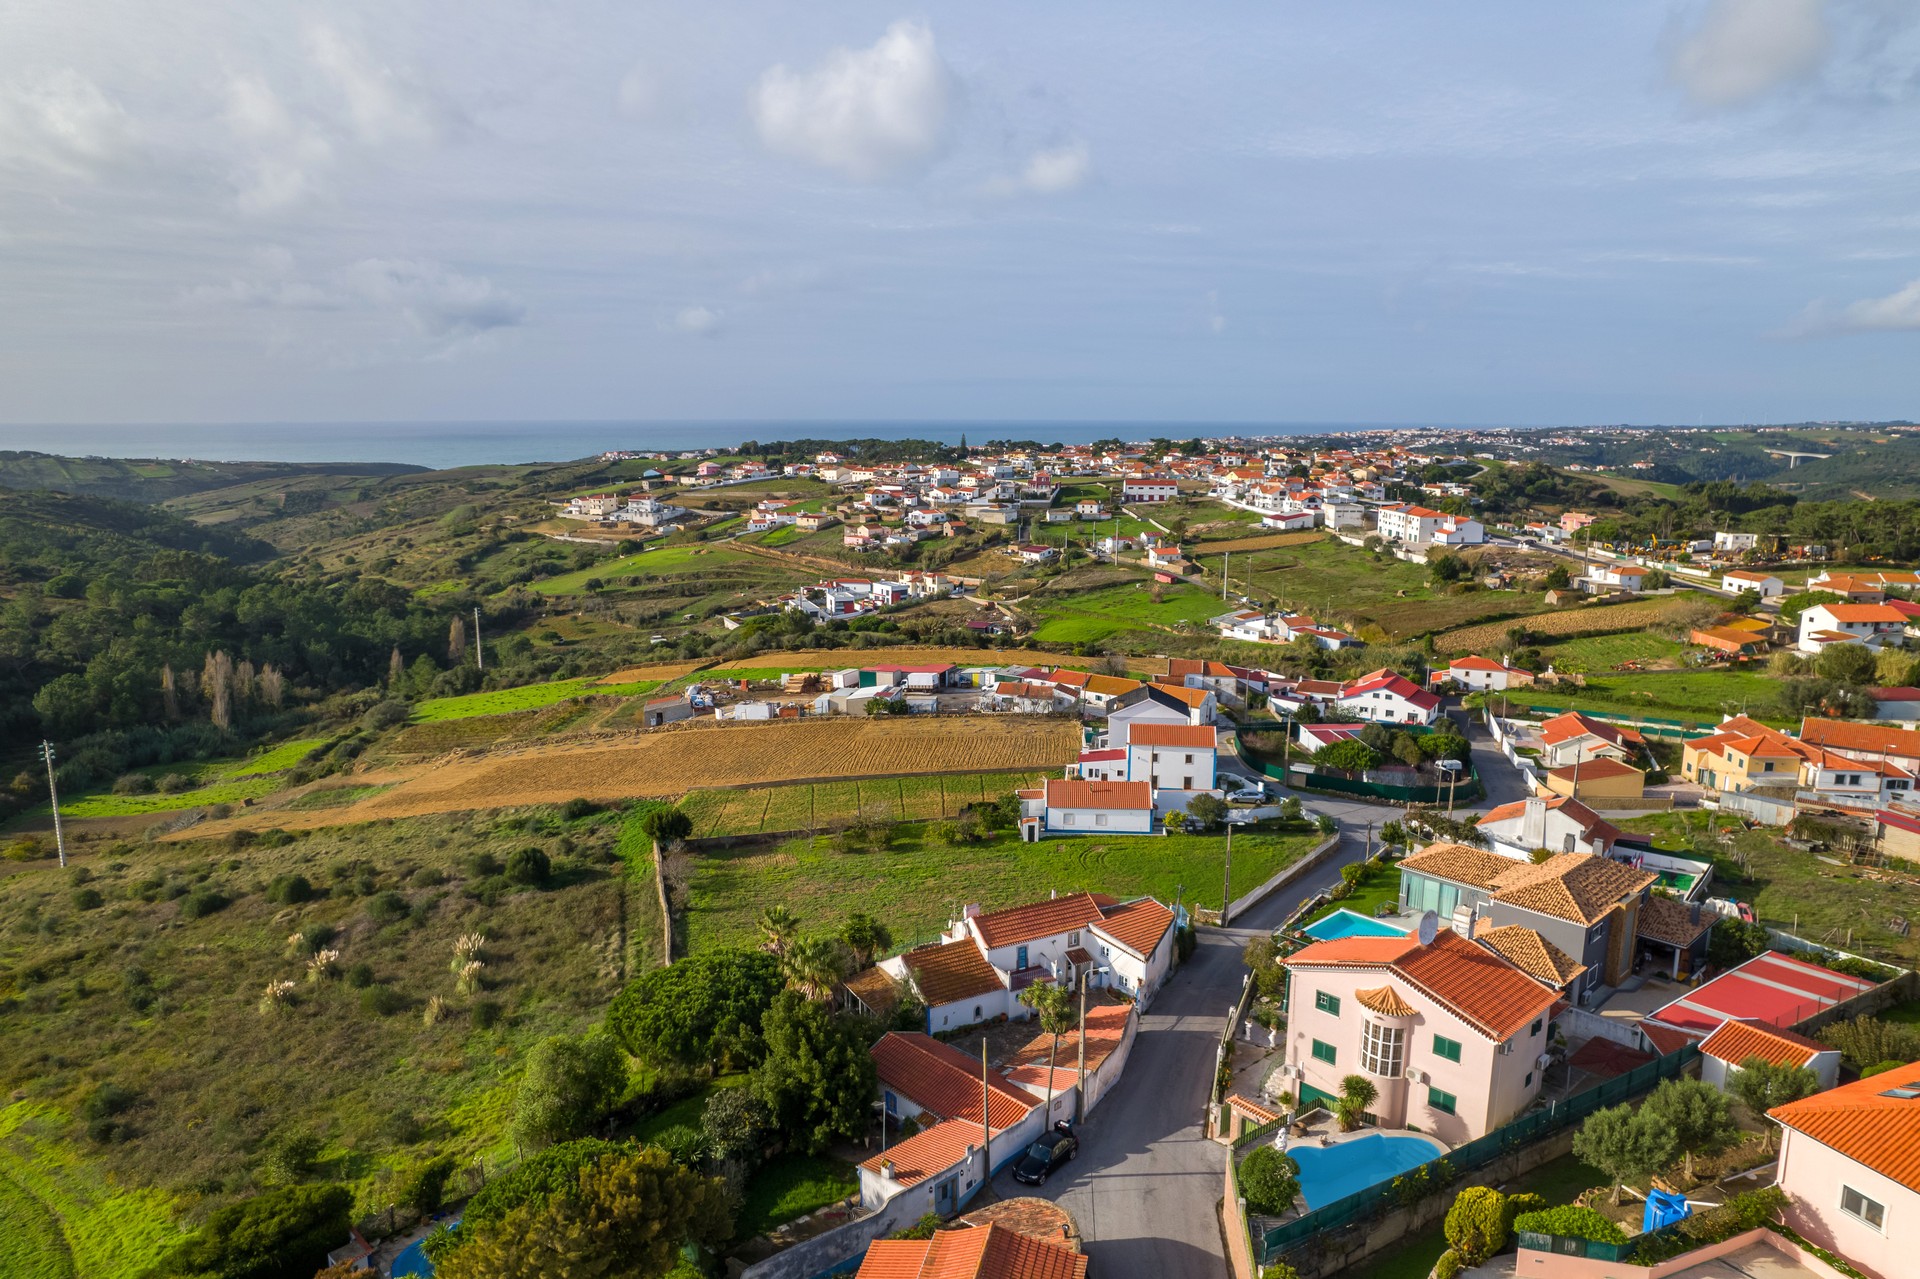 Oportunidade de investimento no concelho de Sintra